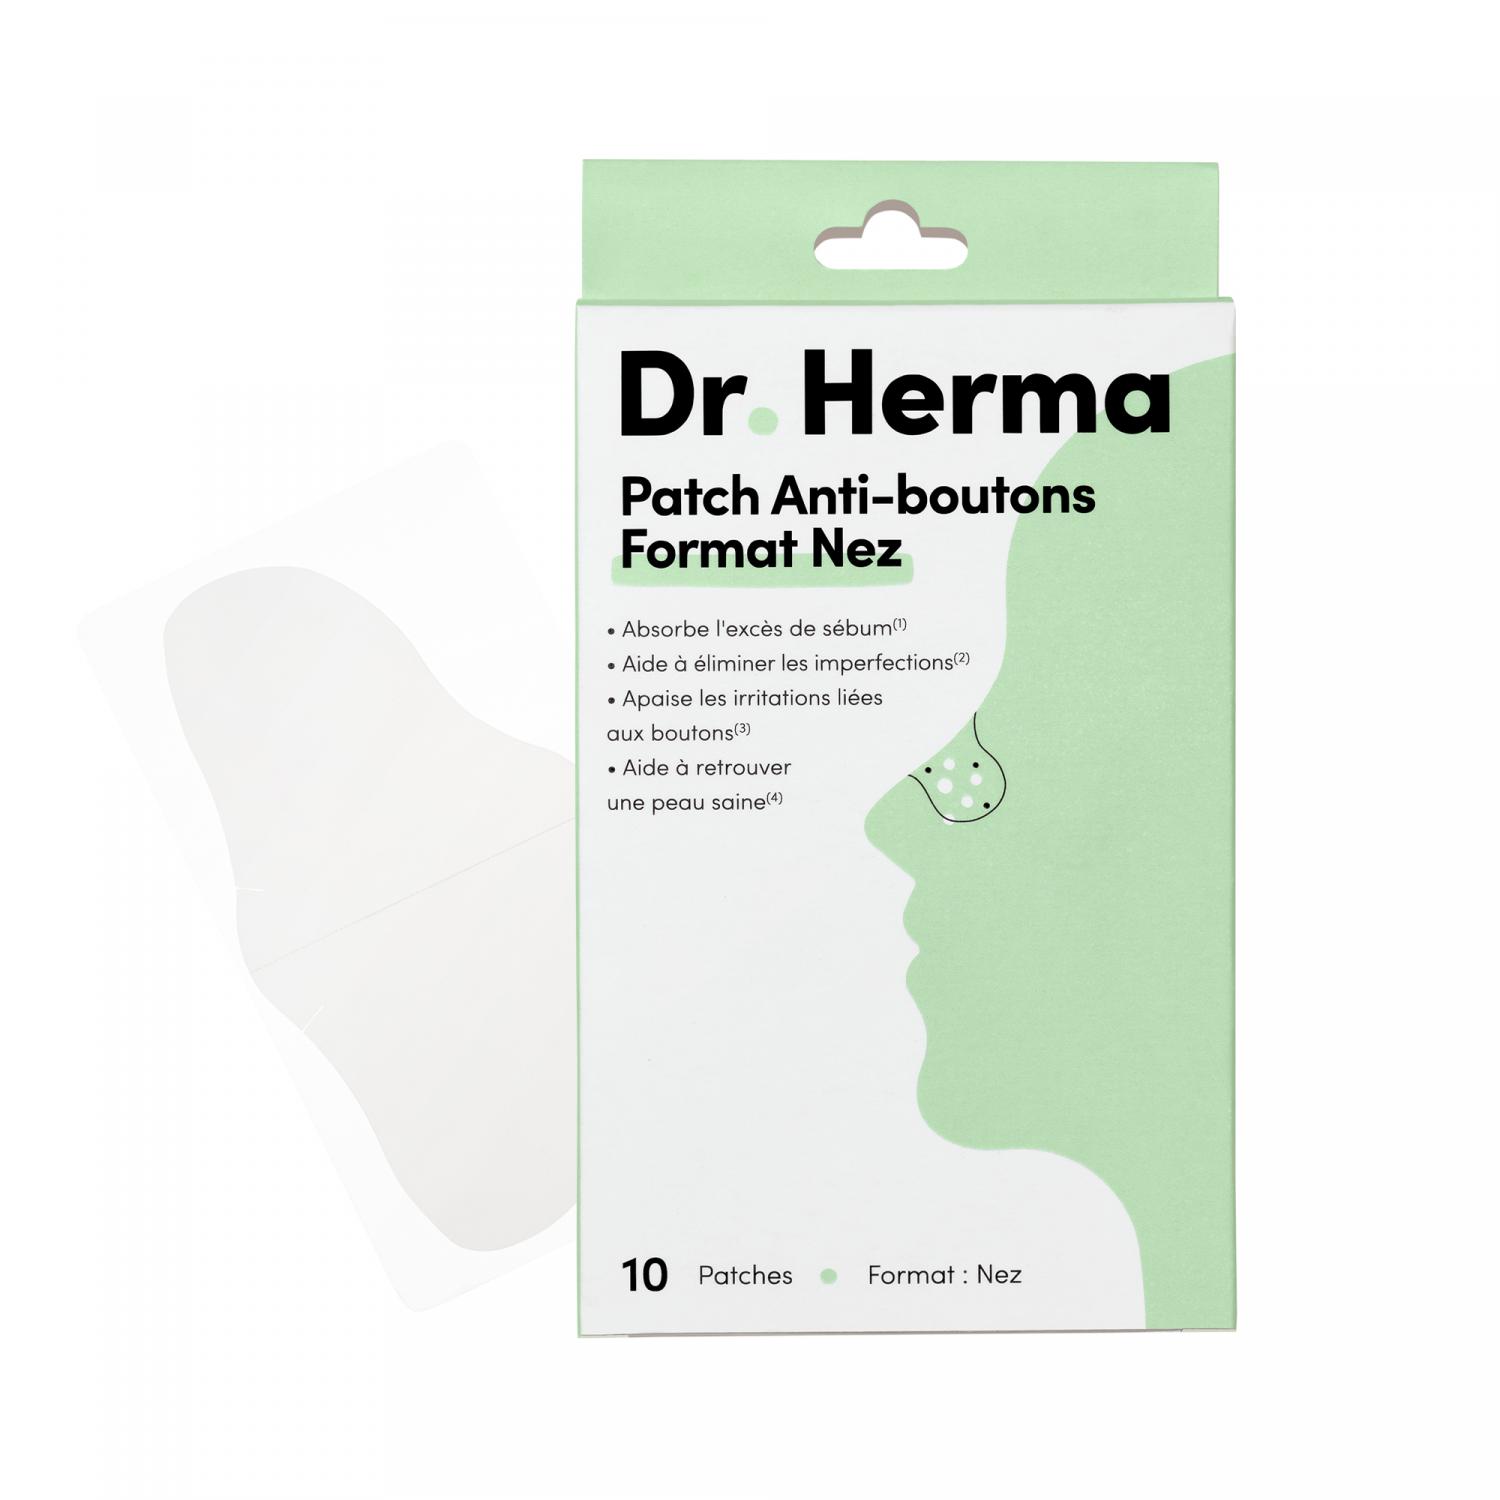 Patch anti-boutons format nez Dr Herma - boite de 24 patches